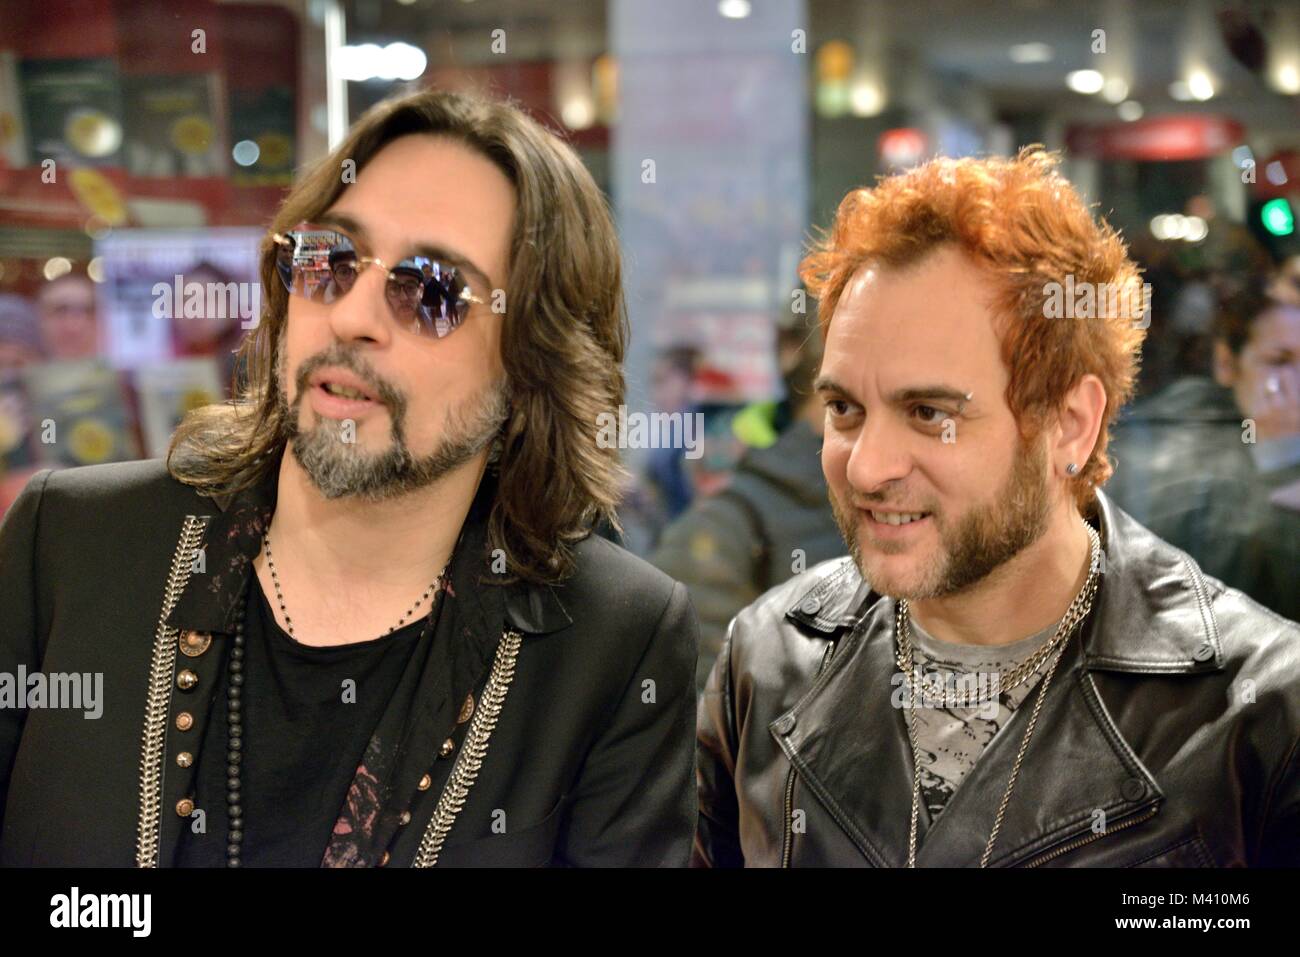 Le Vibrazioni Francesco Sarcìna) Italian rock band in Milano Stock Photo